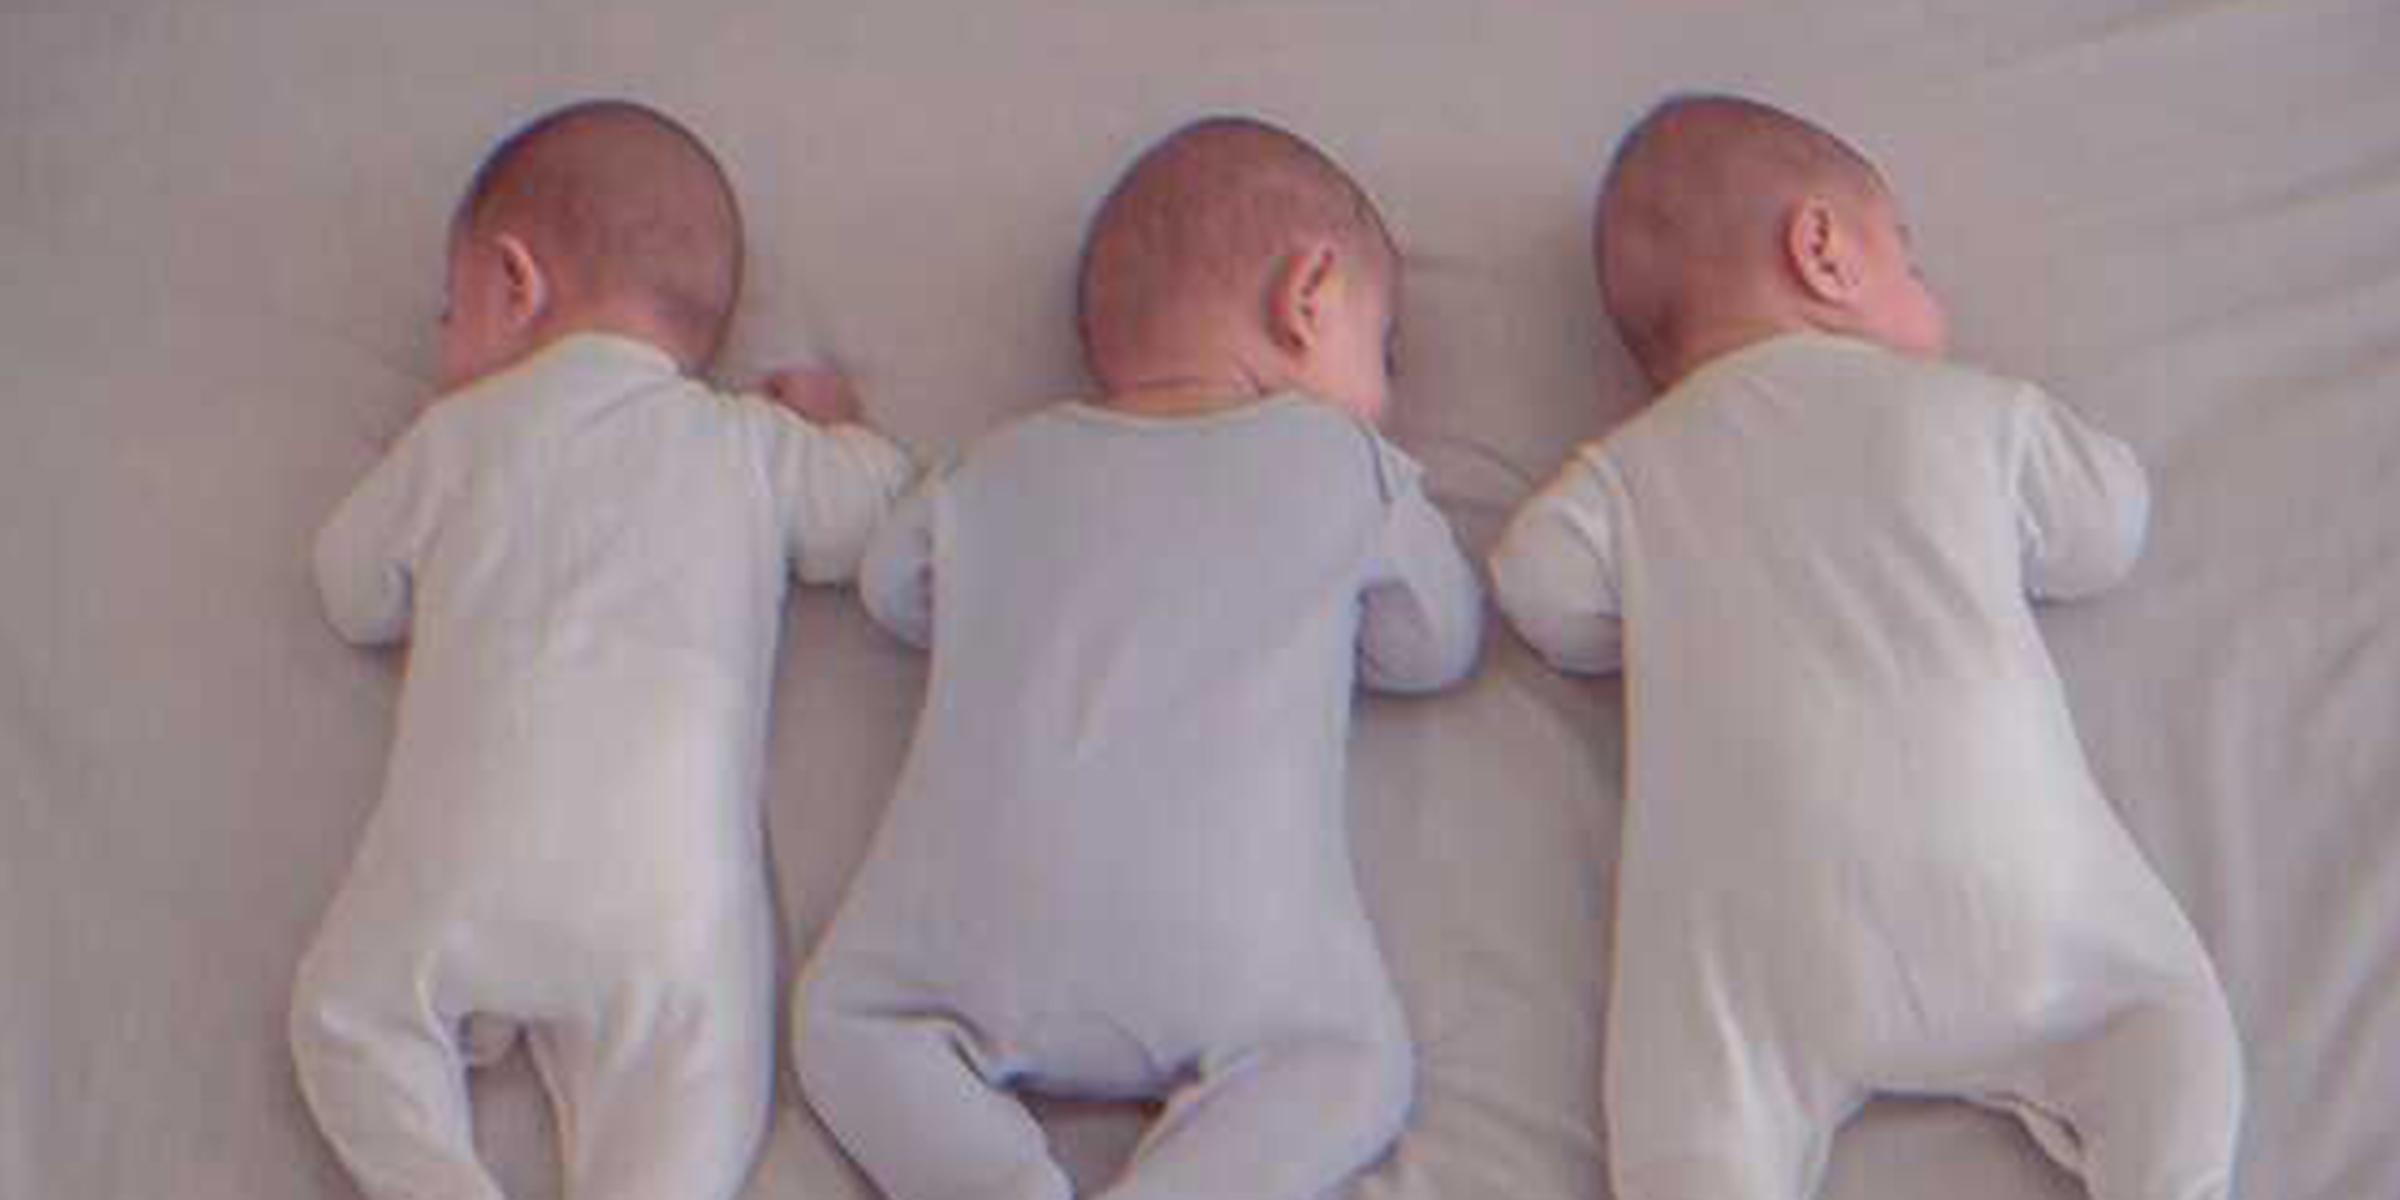 3 bebes acostados en una cama | Foto: Unsplash